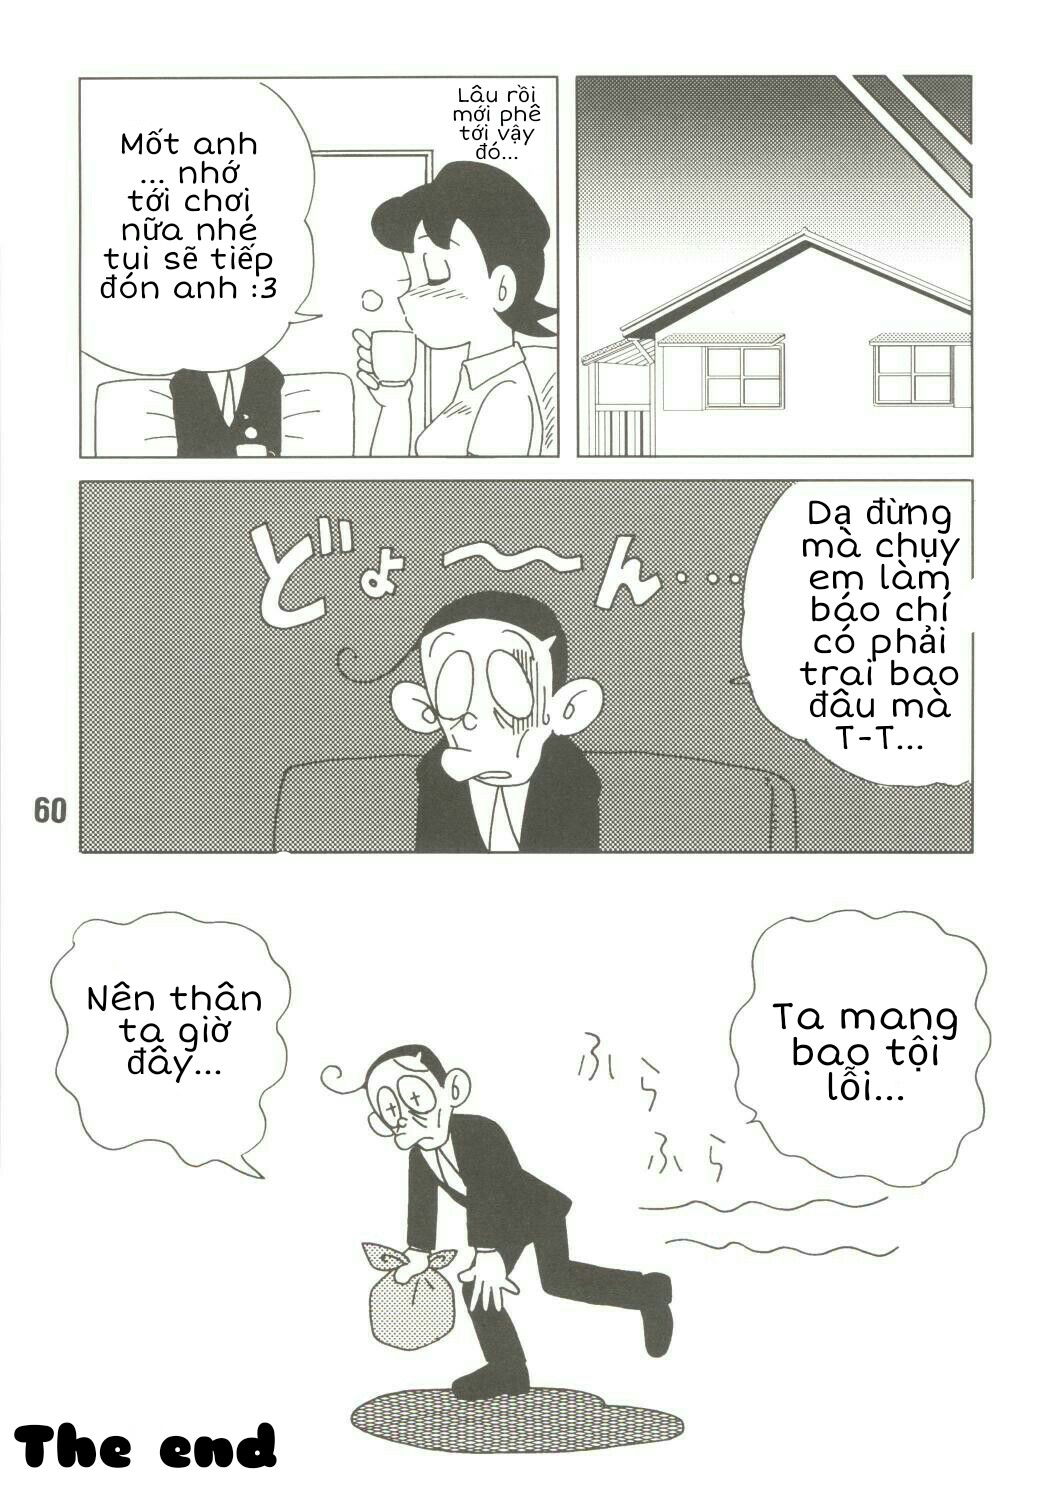 Tuyển Tập Doraemon Doujinshi 18+ Chương 39 M Xuka v ch ng b o ch Trang 18